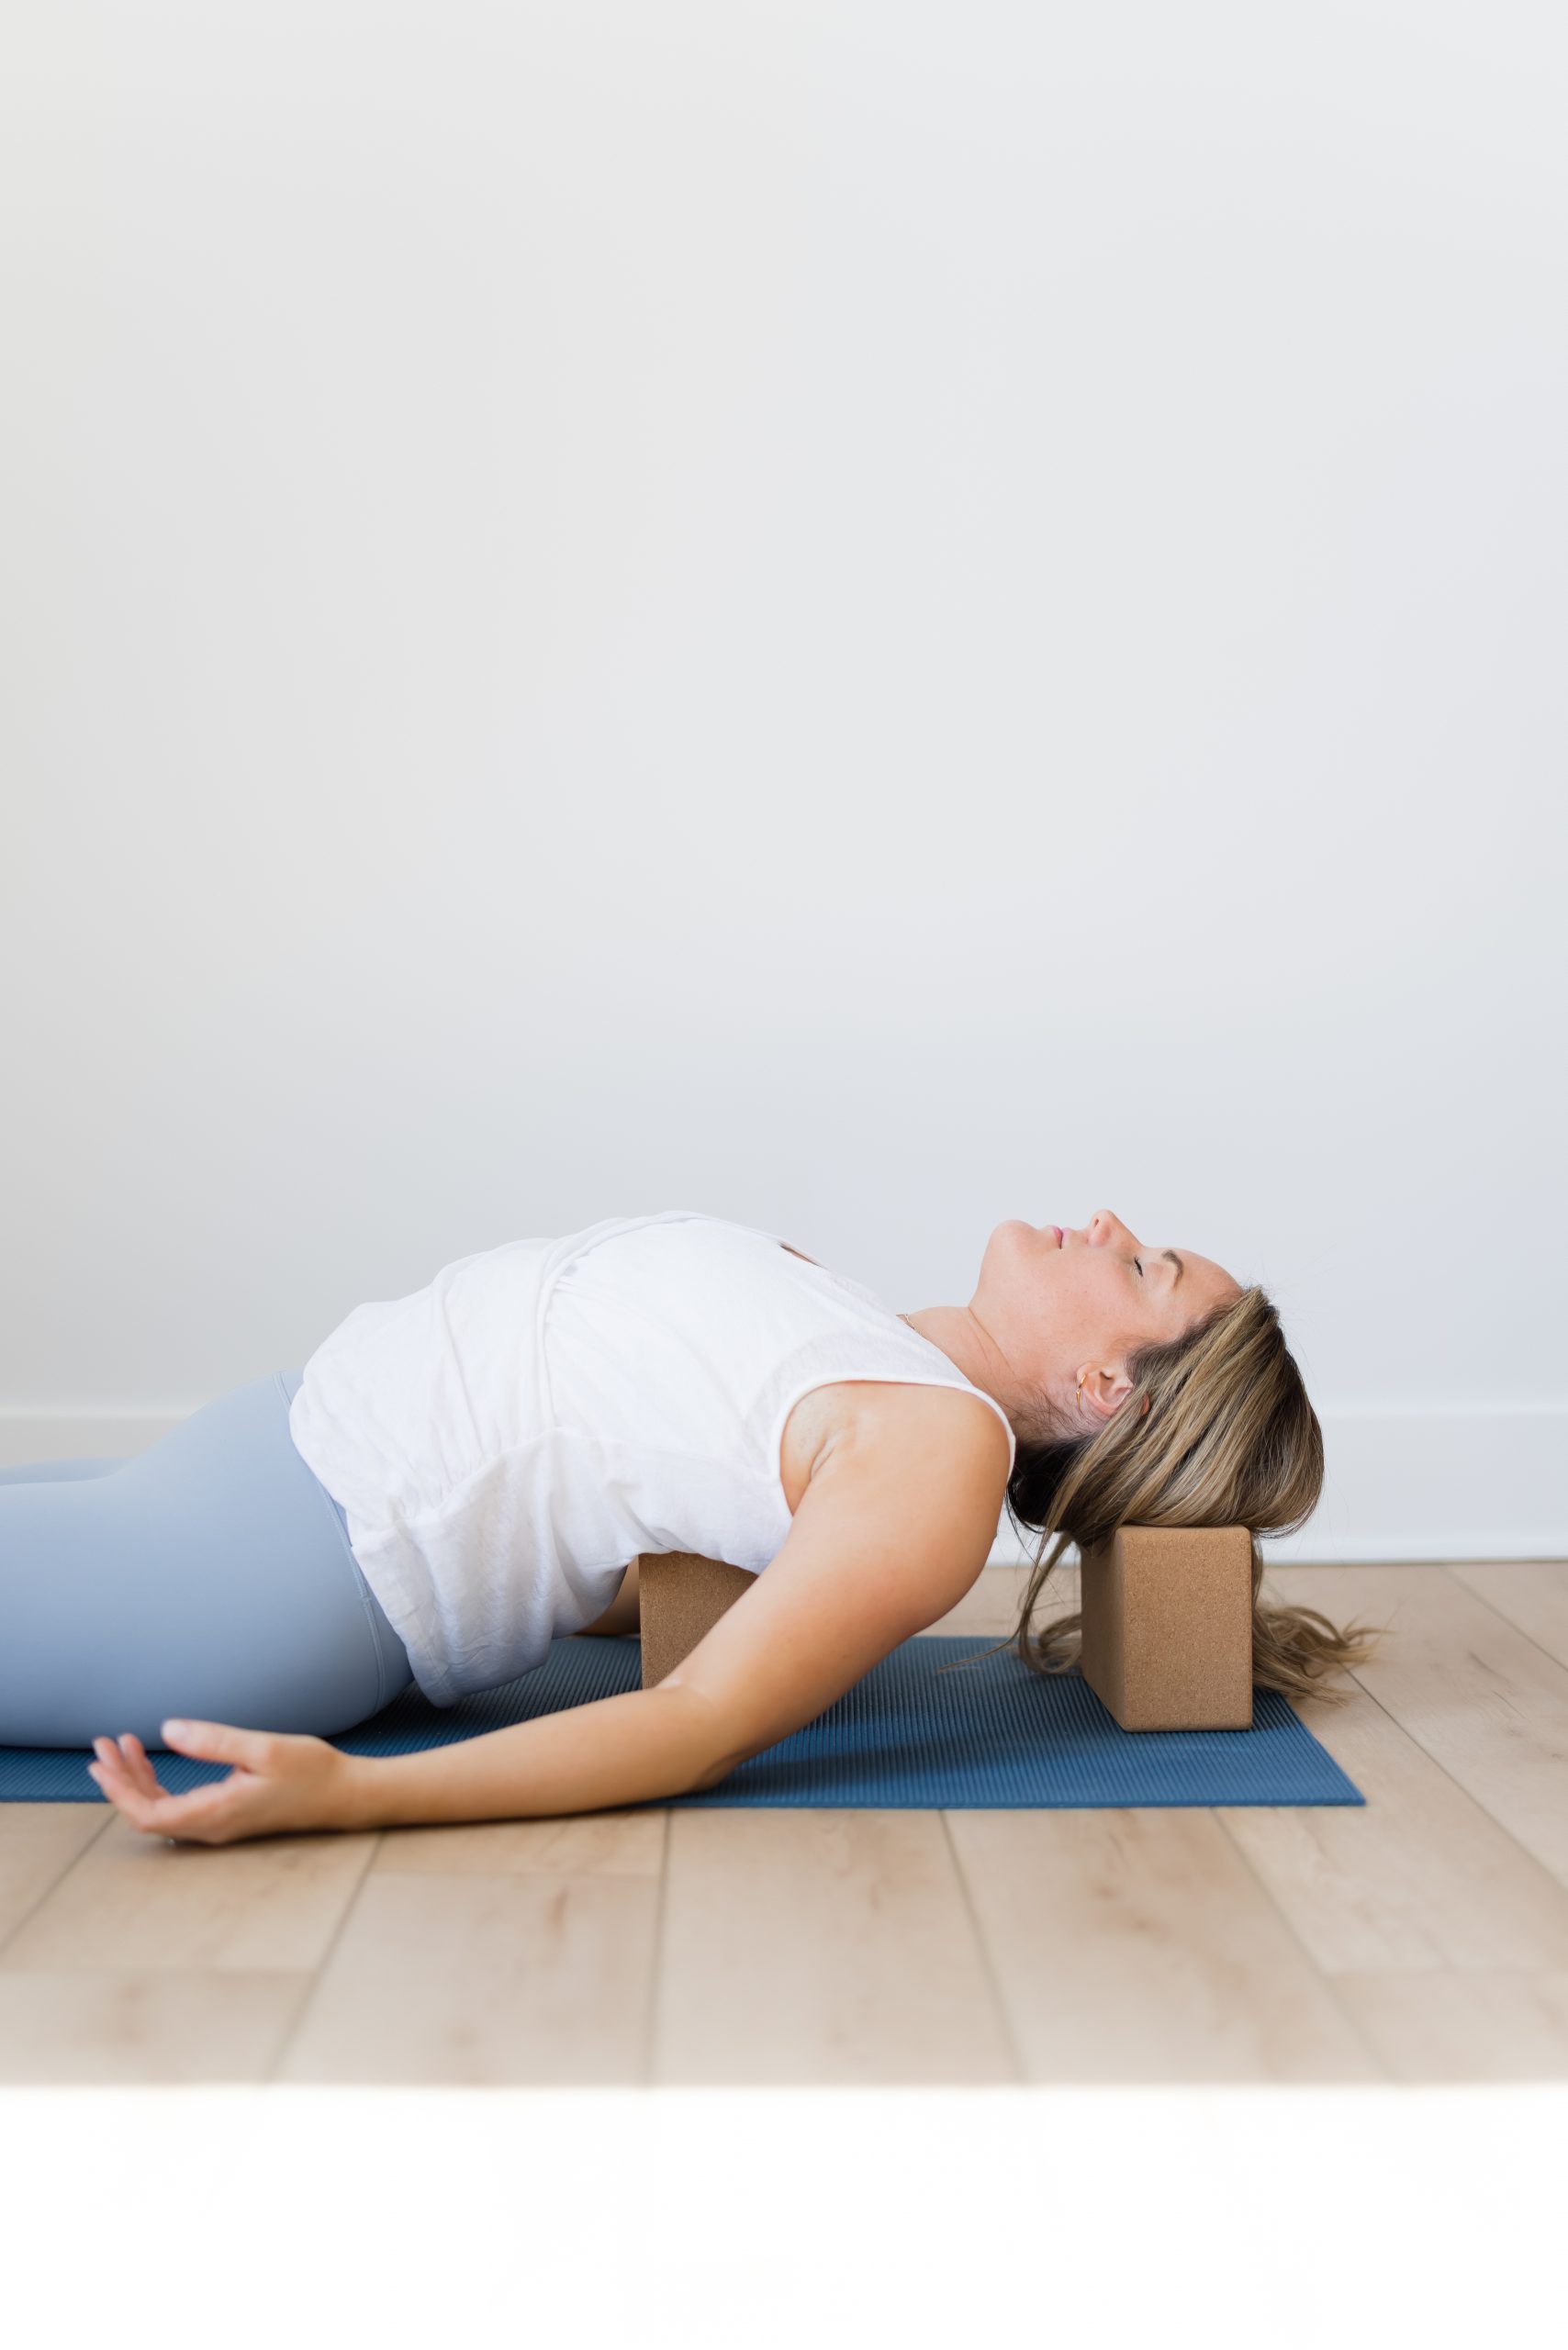 6 Key Benefits of Yin Yoga